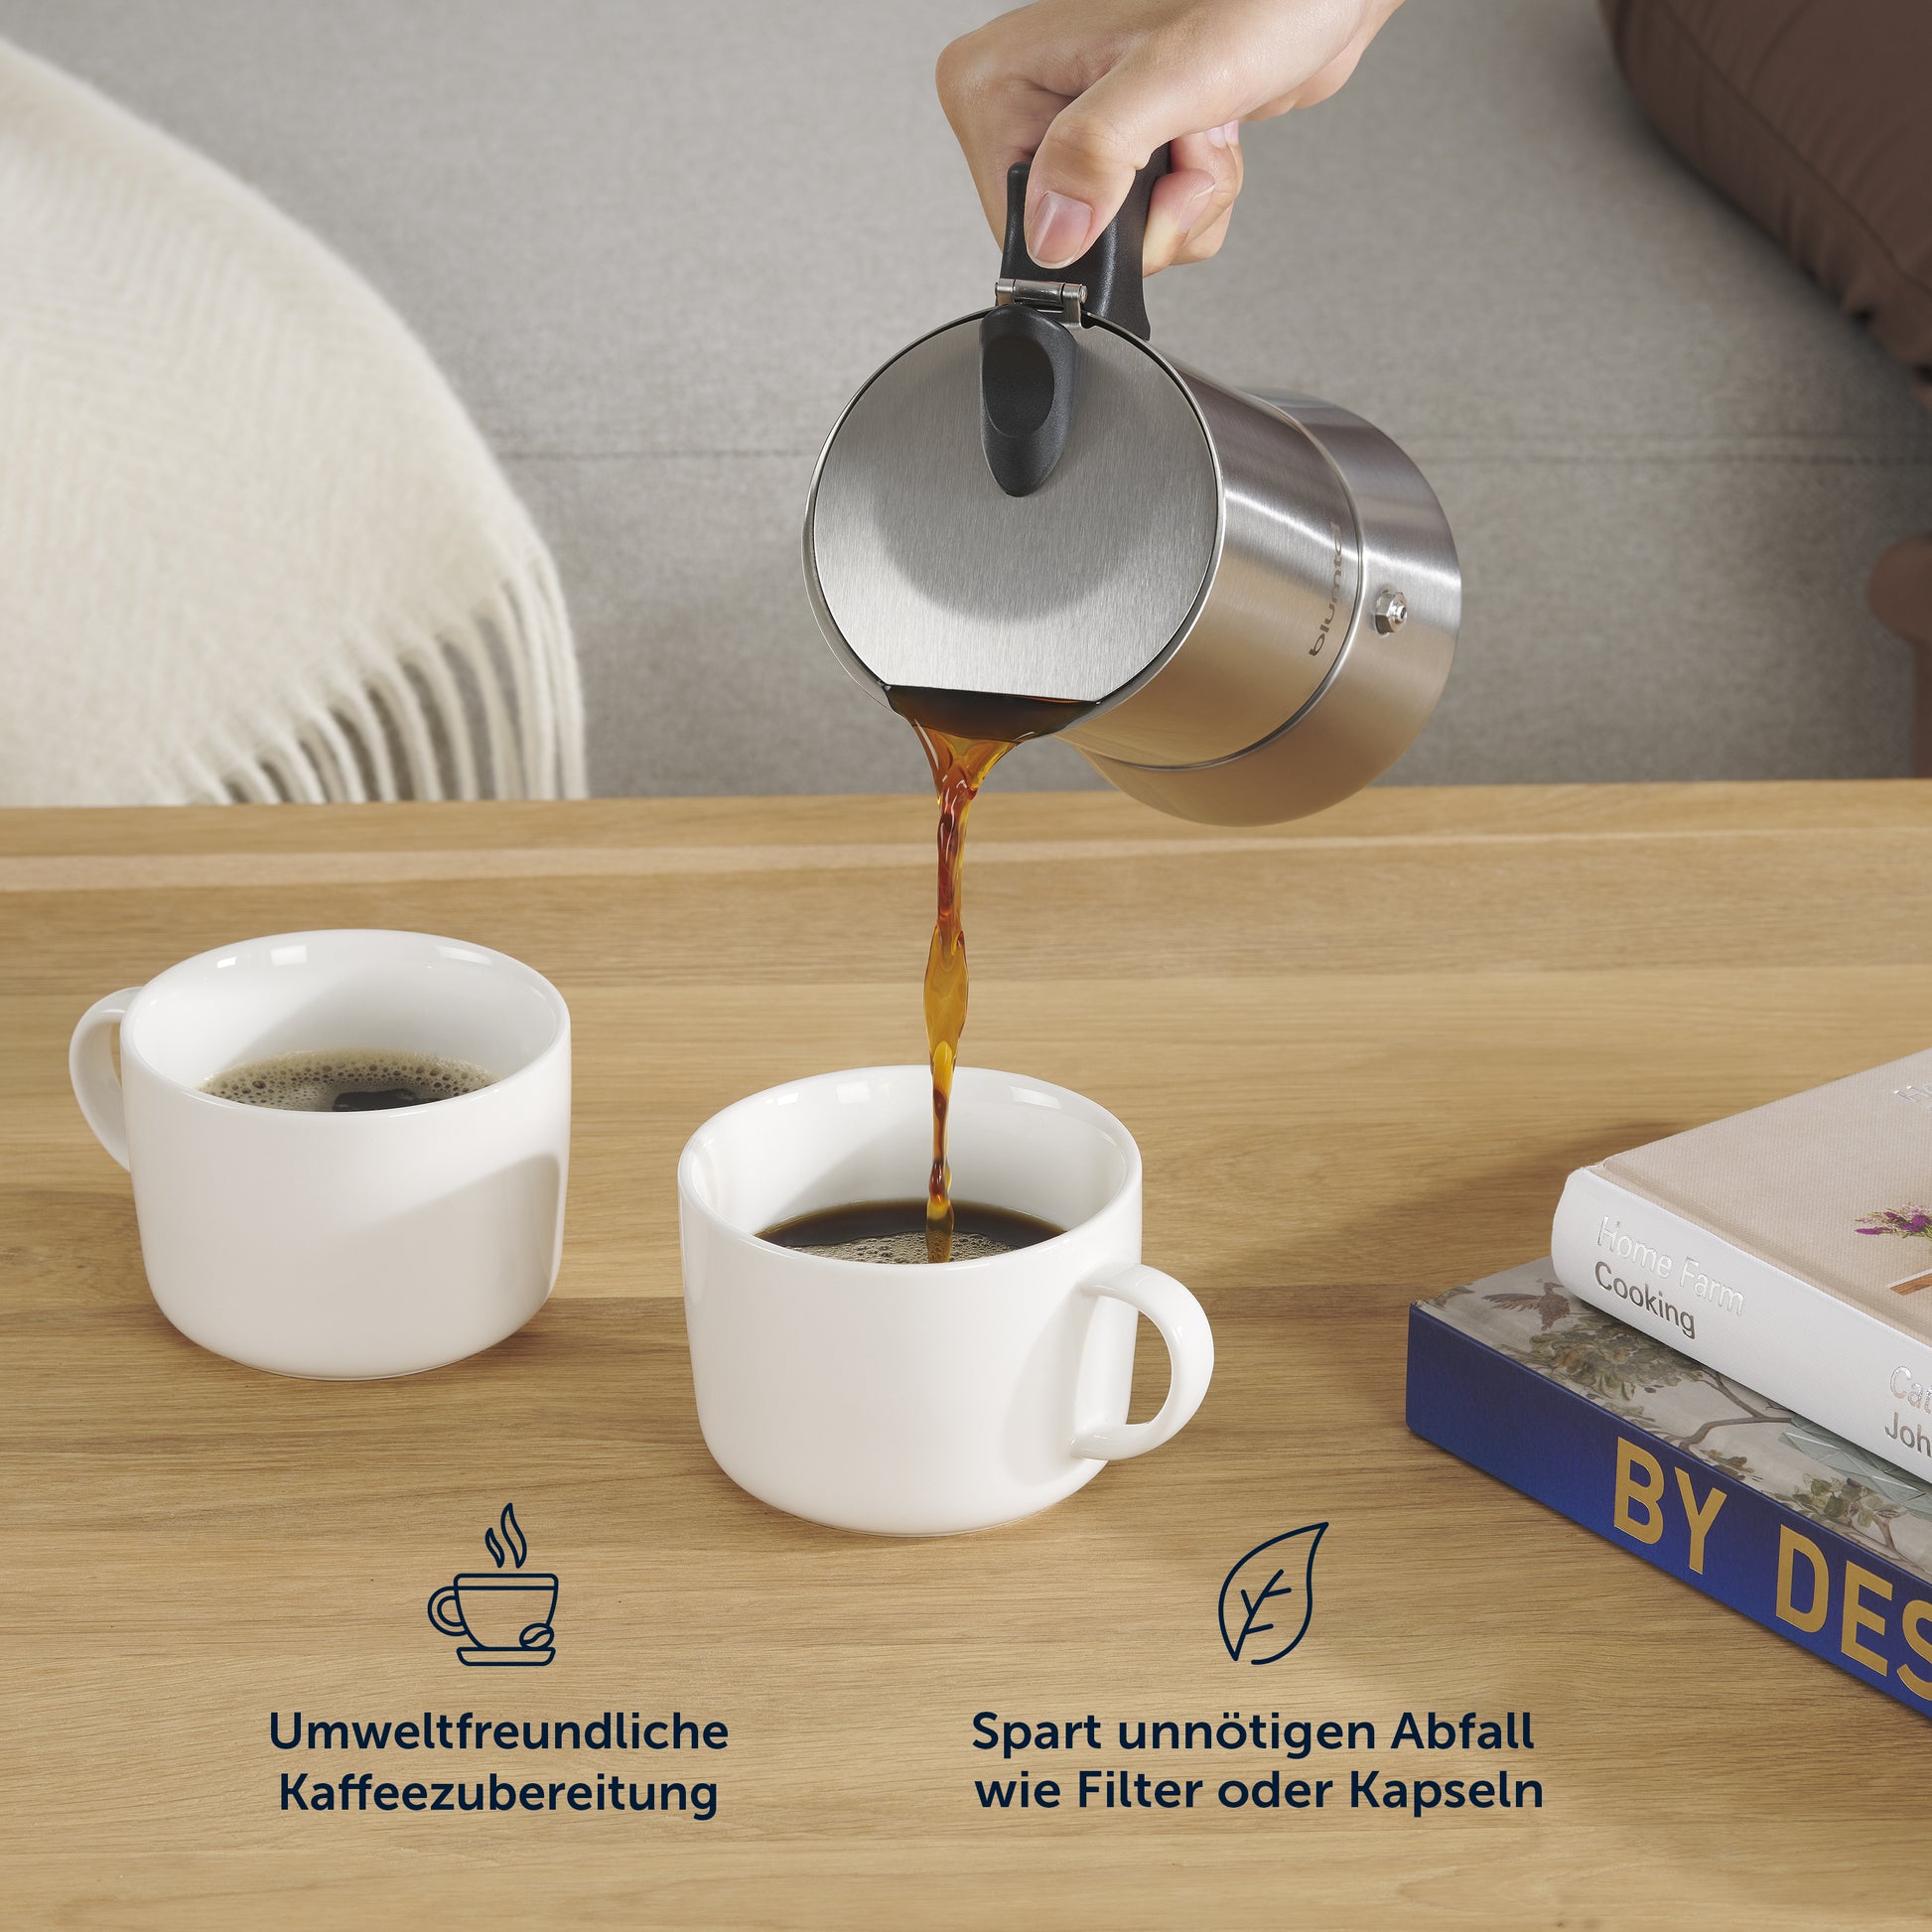 Espressokocher gießt Kaffee in zwei Tassen, mit Text über umweltfreundliche Kaffeezubereitung und Müllvermeidung.